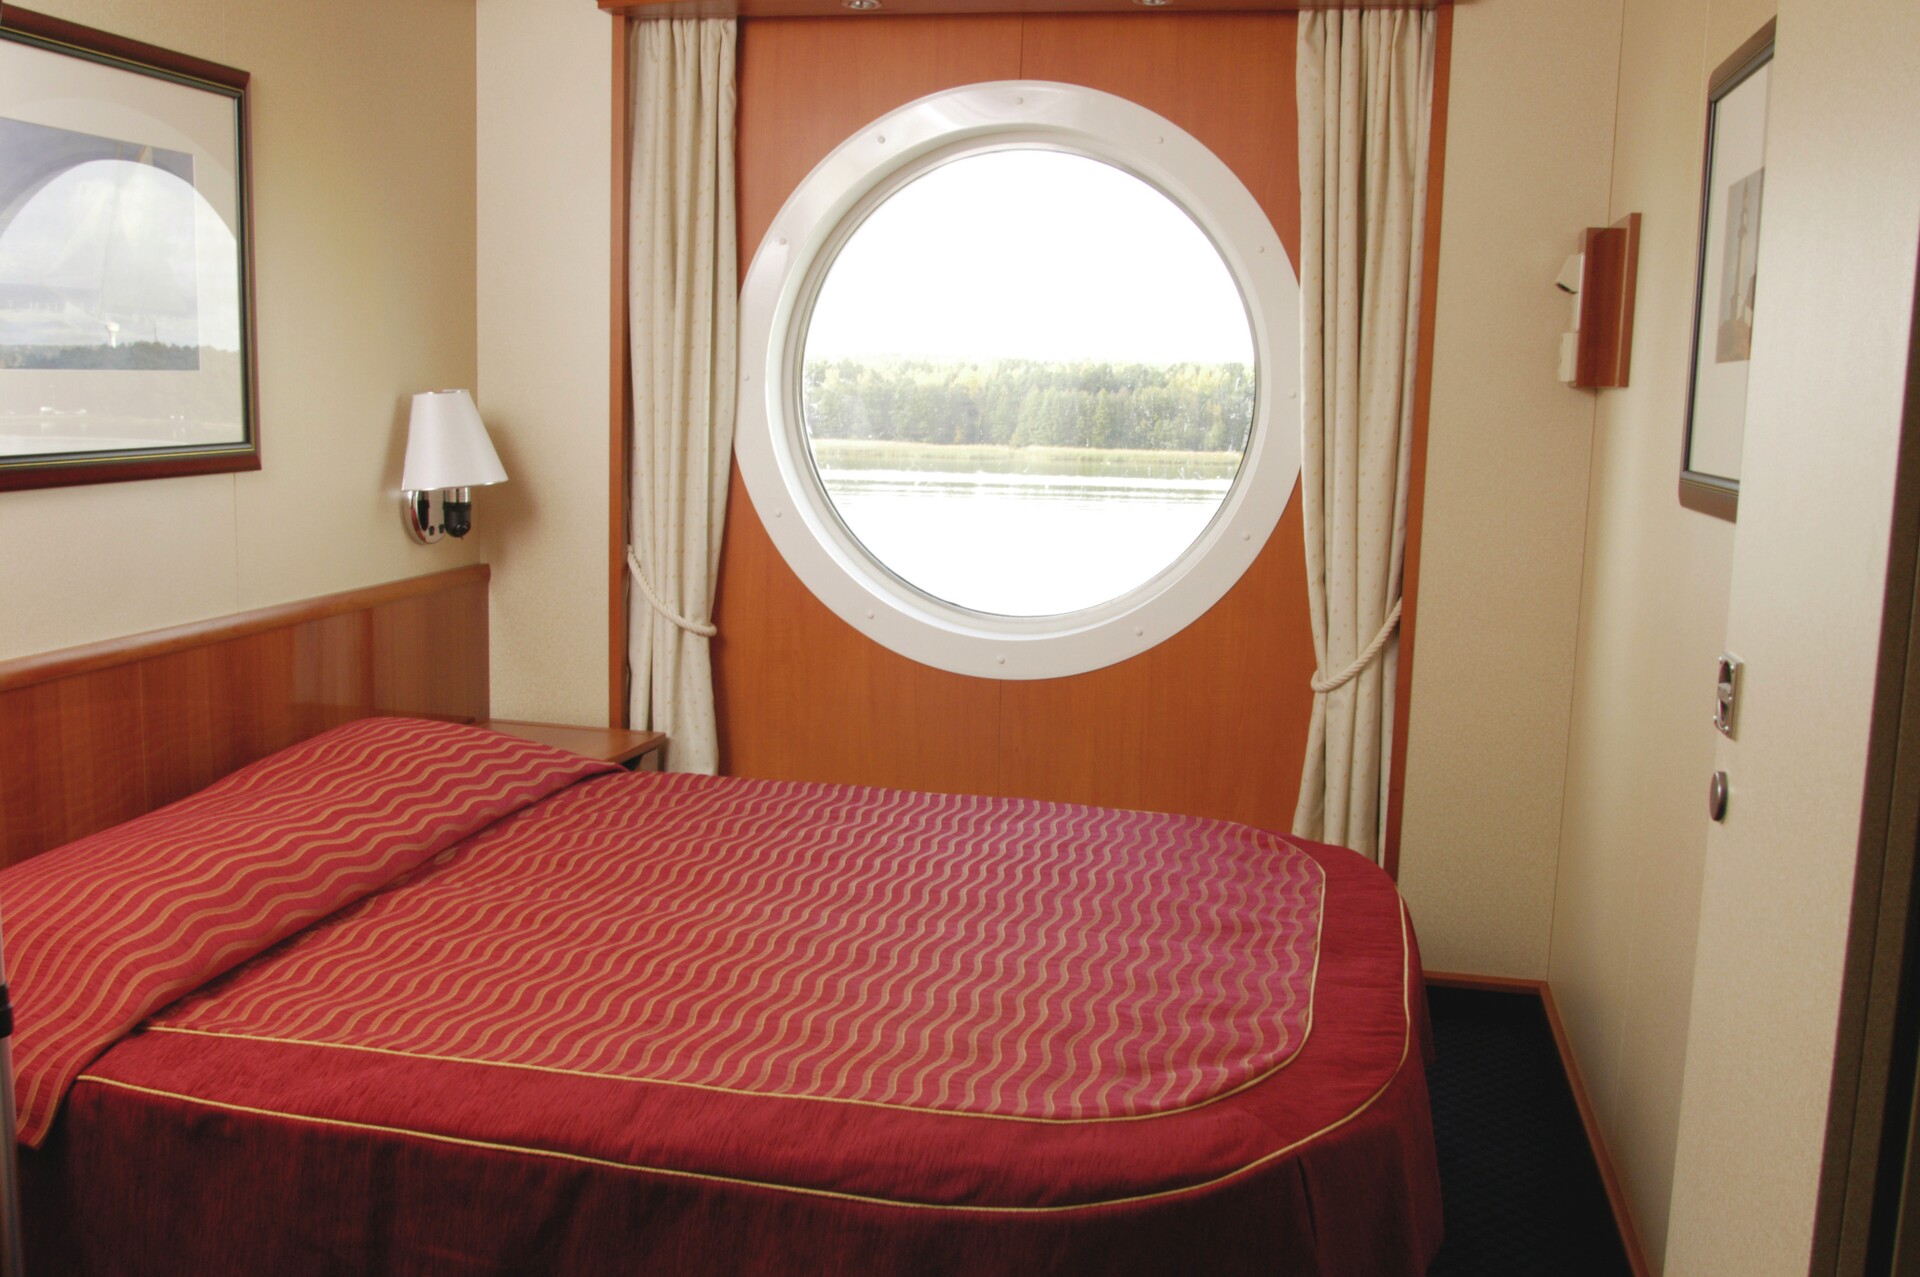 1. Standard Oceanview Cabin - Single occupancy, double bed